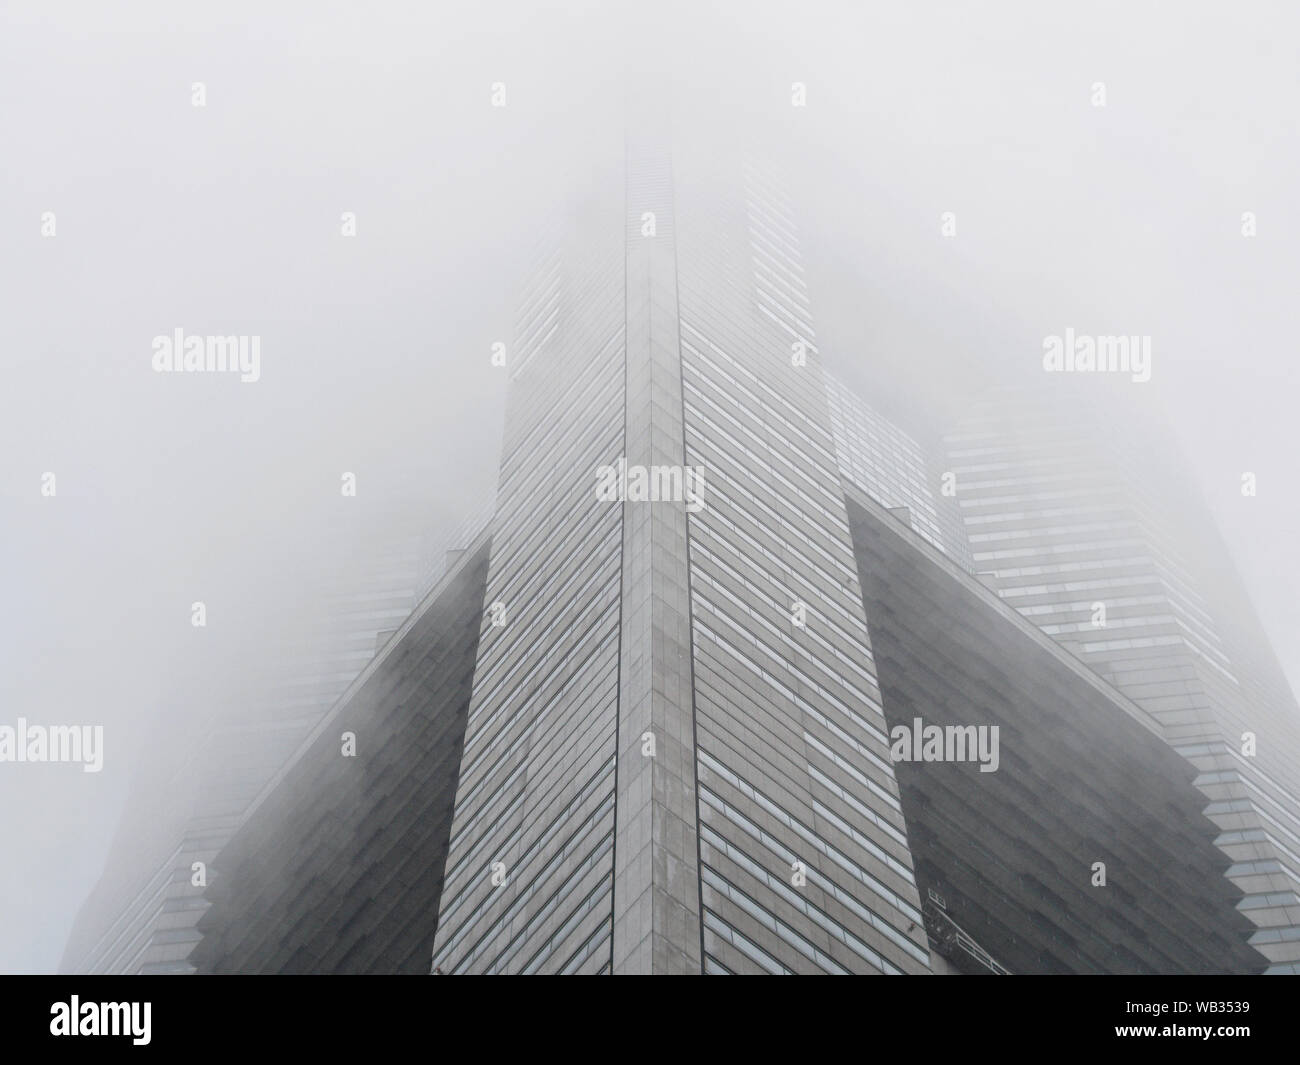 Landmark Tower in fog Yokohama, Japan. Stock Photo